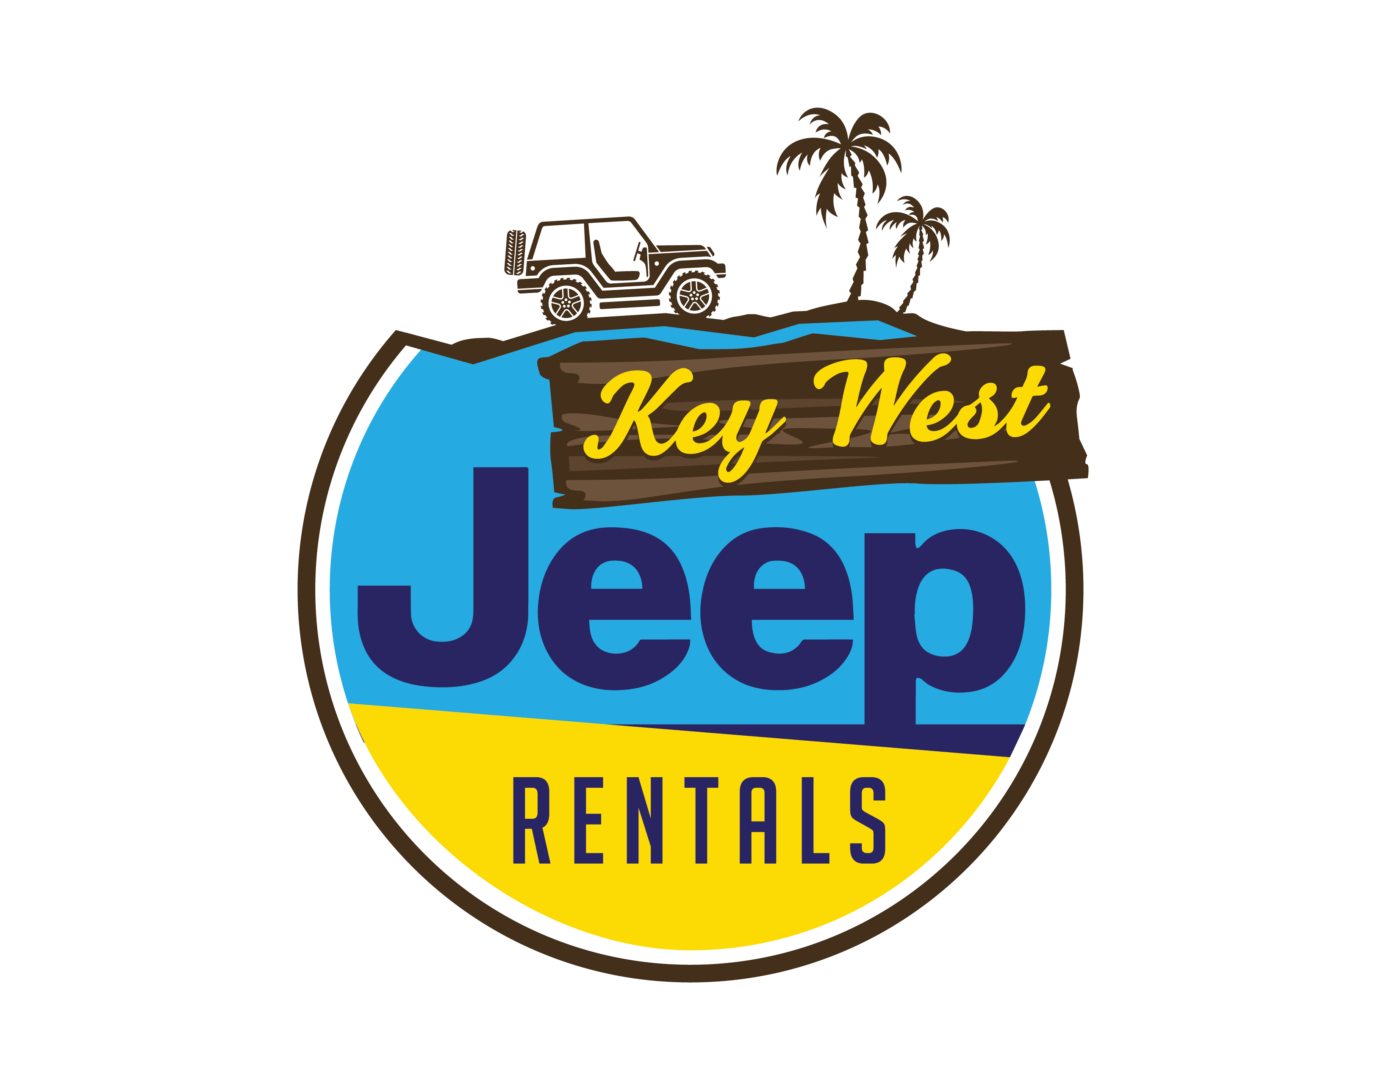 Key-West-Jeep-Rental Logo